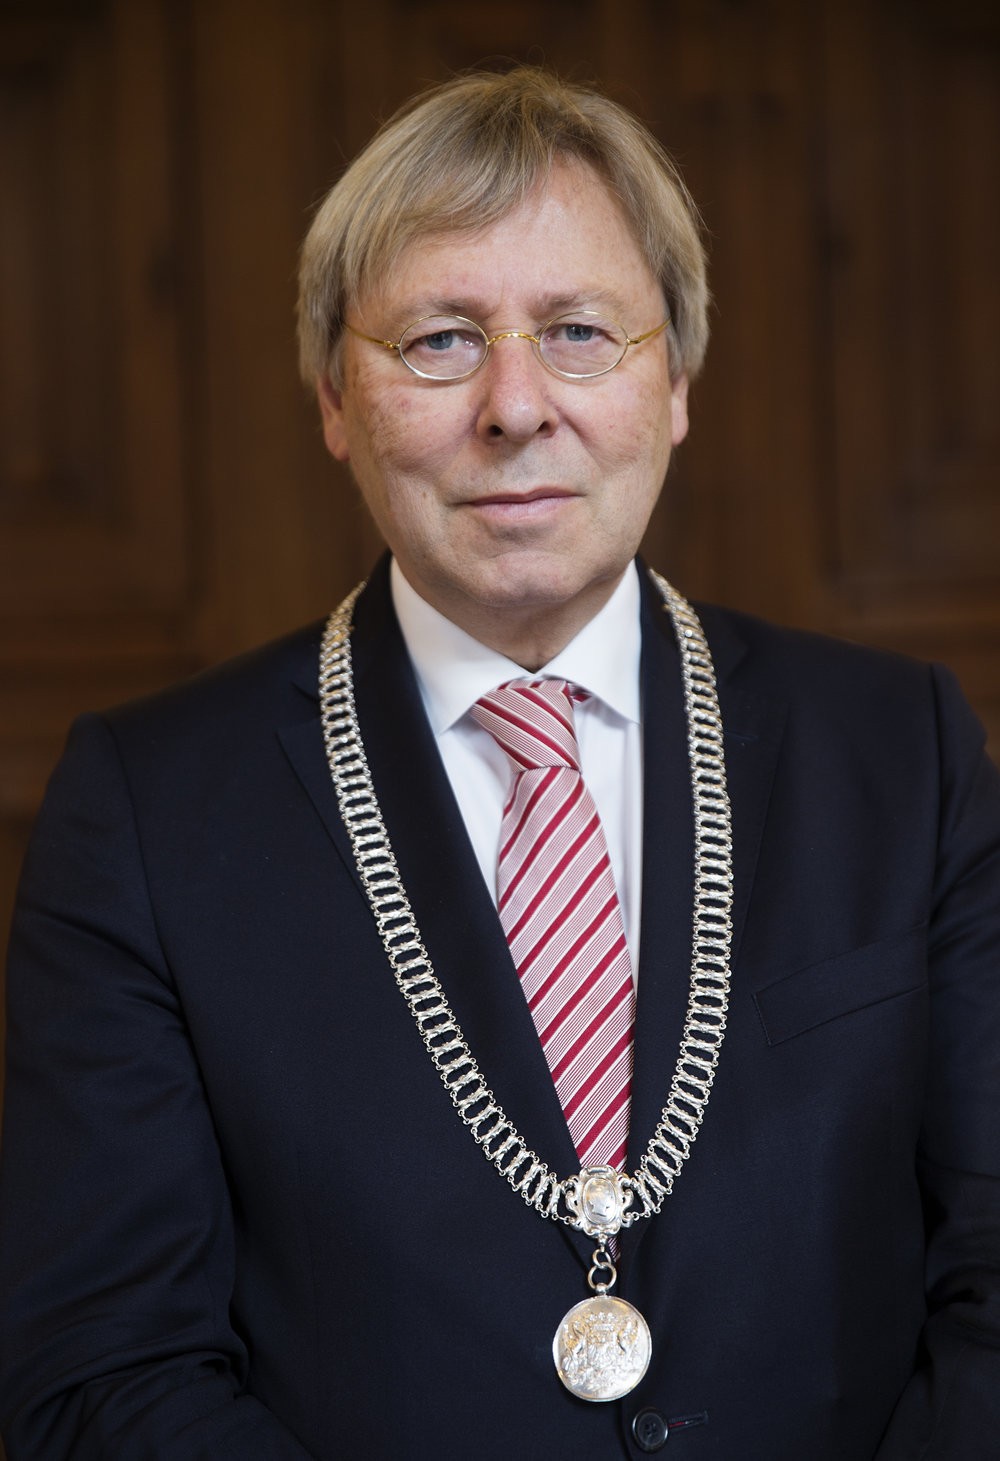 Peter den Oudsten - Mayor of the city of Groningen